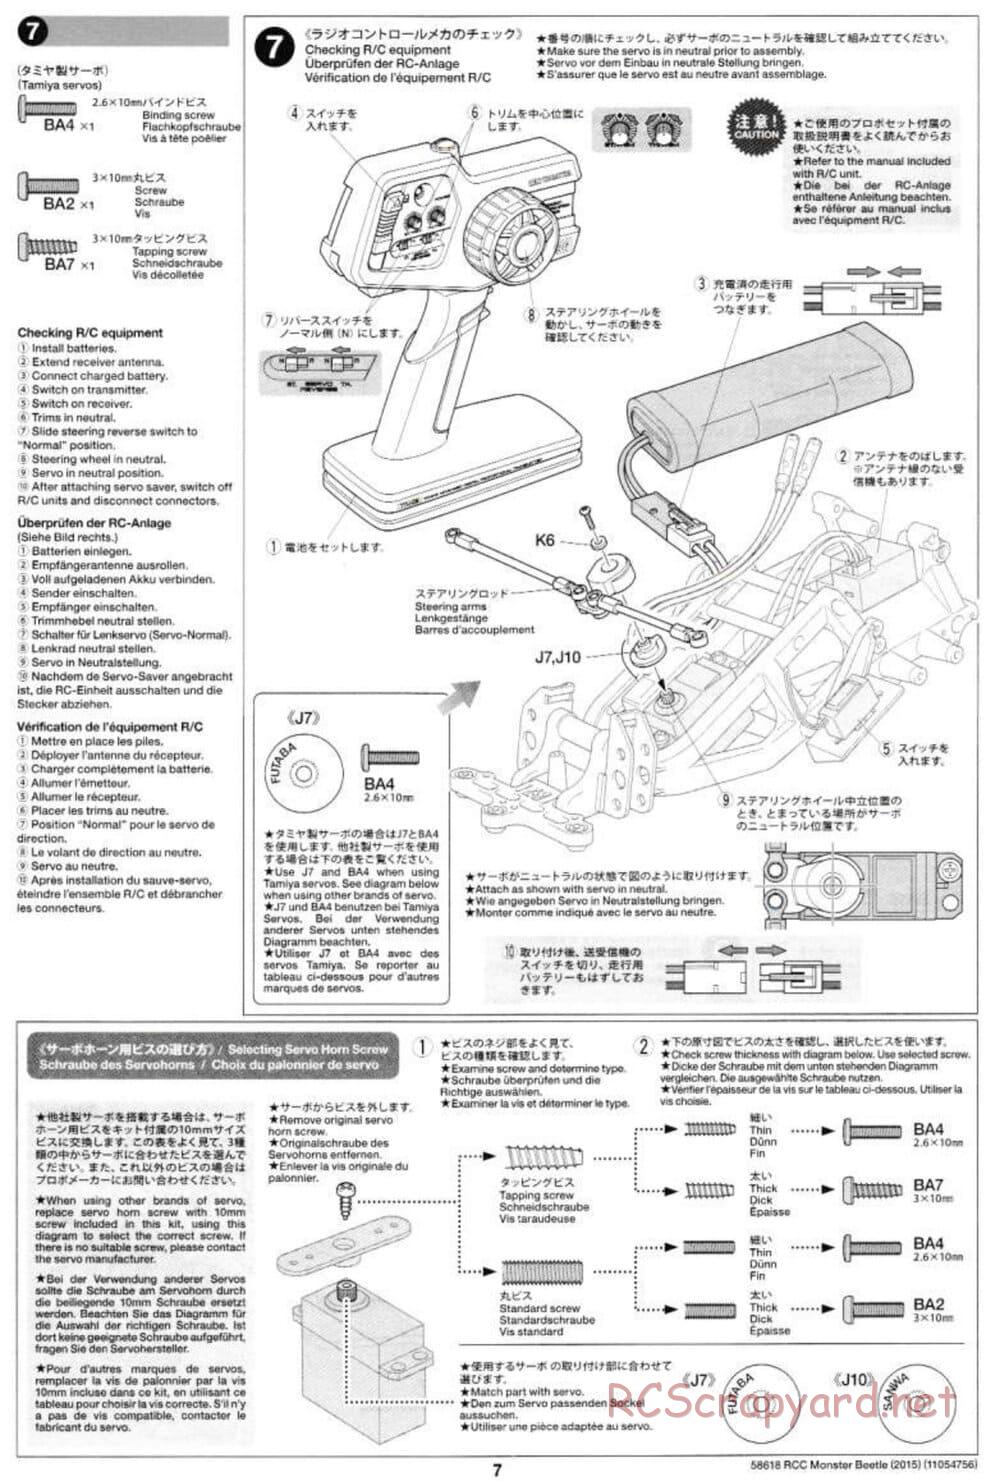 Tamiya - Monster Beetle 2015 - ORV Chassis - Manual - Page 7